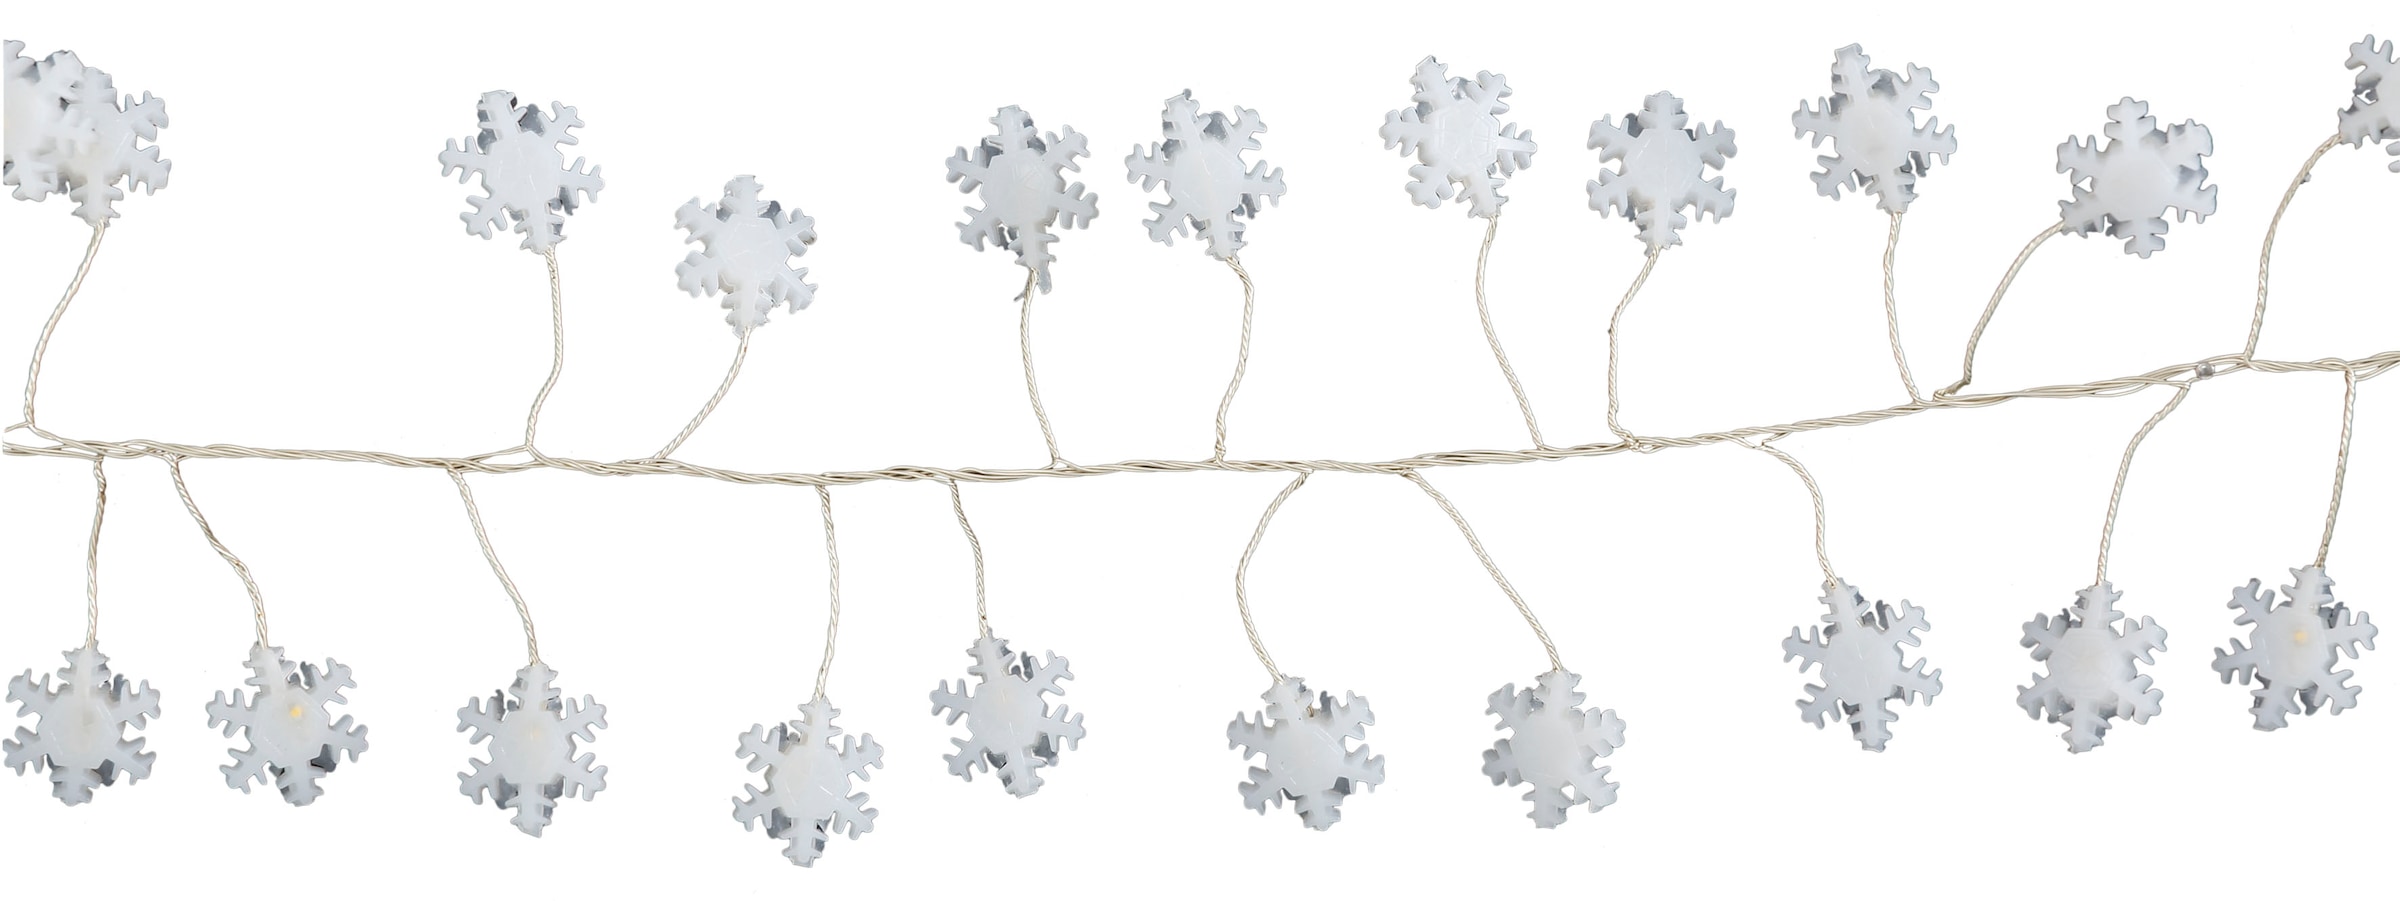 AM Design LED-Lichterkette »Schneeflocke, Weihnachtsdeko aussen«, 5m  Anlaufkabel auf Rechnung kaufen